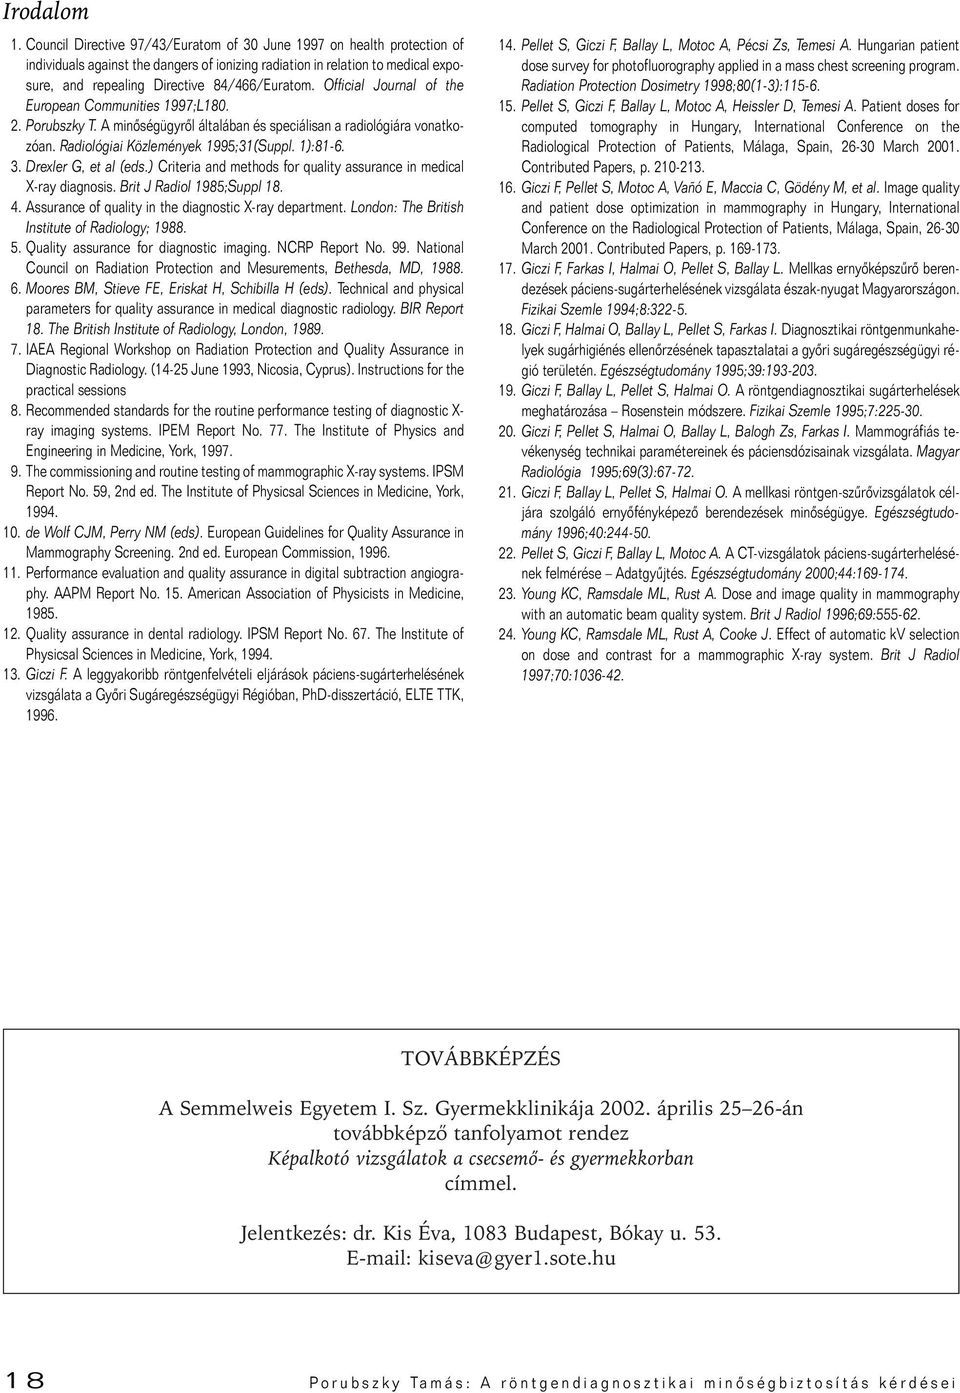 Official Journal of the European Communities 1997;L180. 2. Porubszky T. A minôségügyrôl általában és speciálisan a radiológiára vonatkozóan. Radiológiai Közlemények 1995;31(Suppl. 1):81-6. 3.